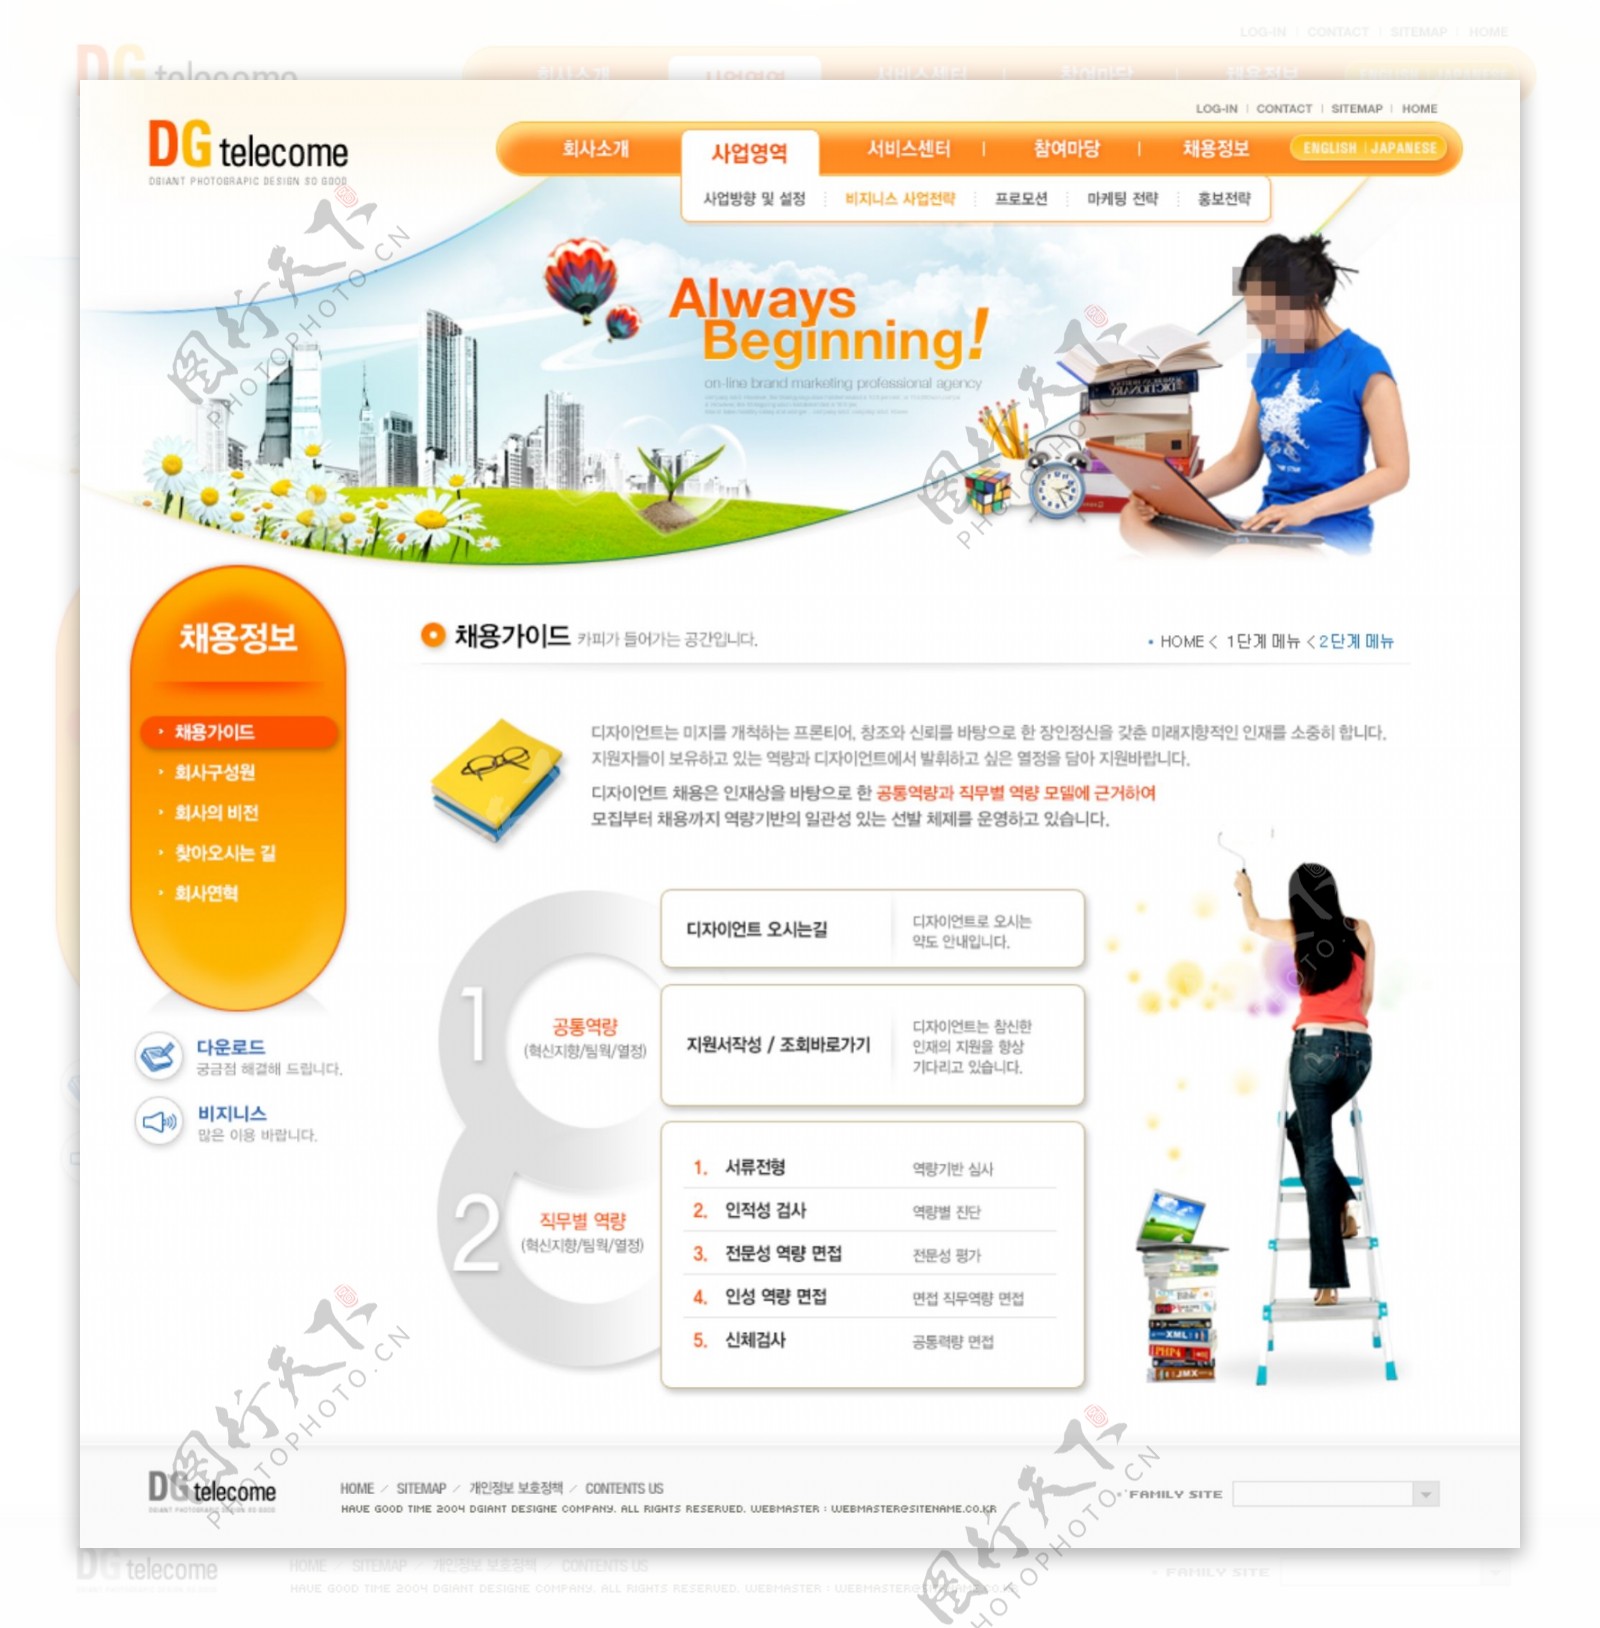 商业教育网页设计图片